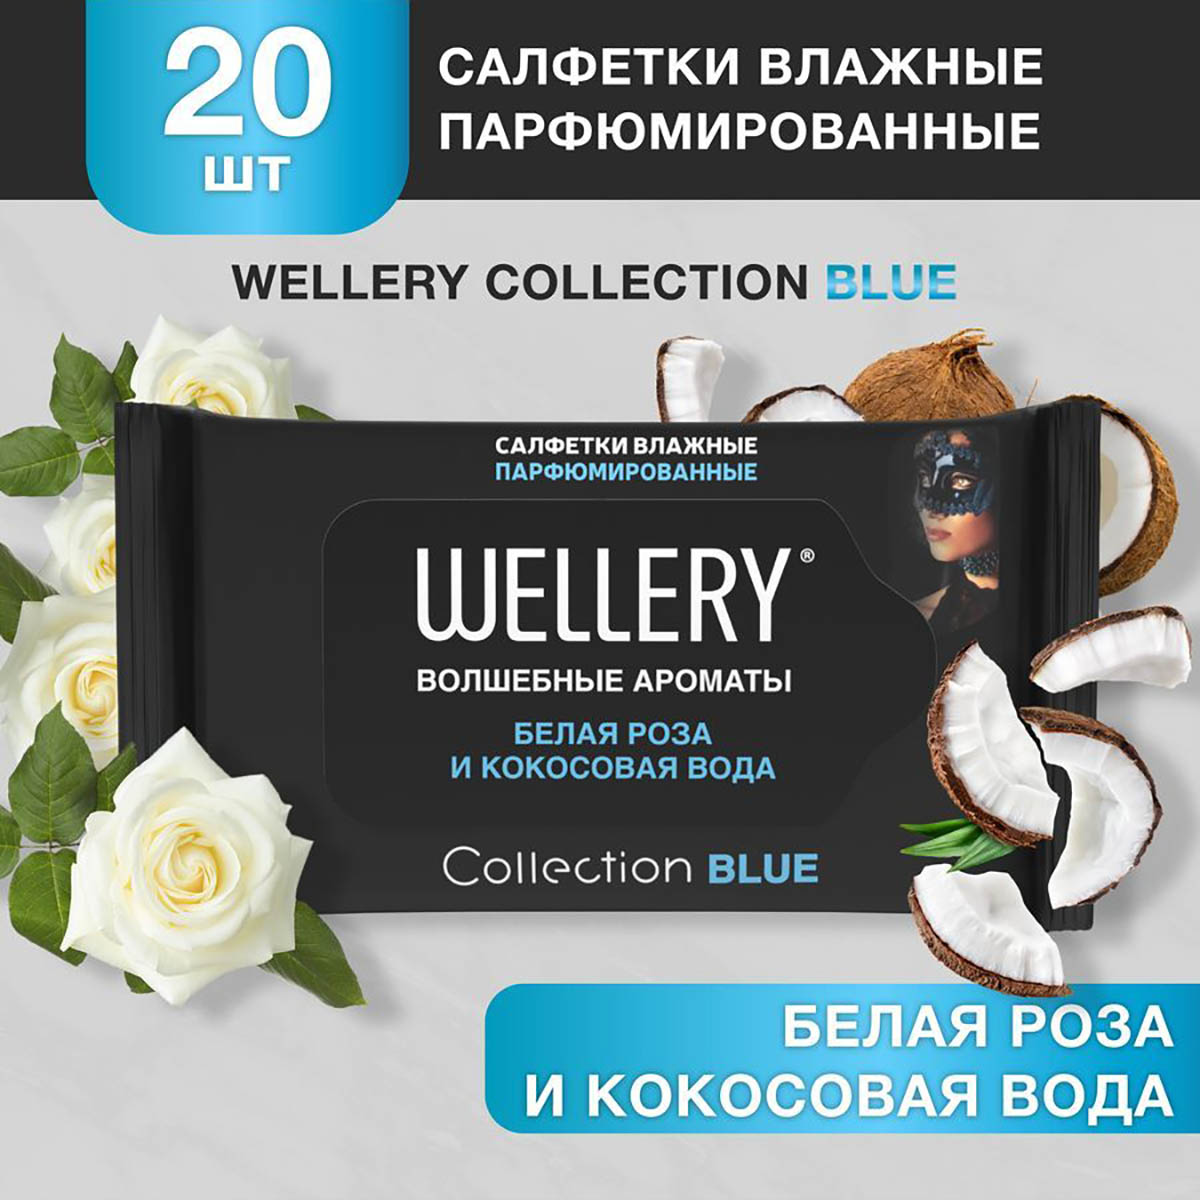 Салфетки влажные Wellery Collection Blue универсальные, белая роза, кокосовая вода 20 шт юнландия салфетки влажные детские универсальные 1